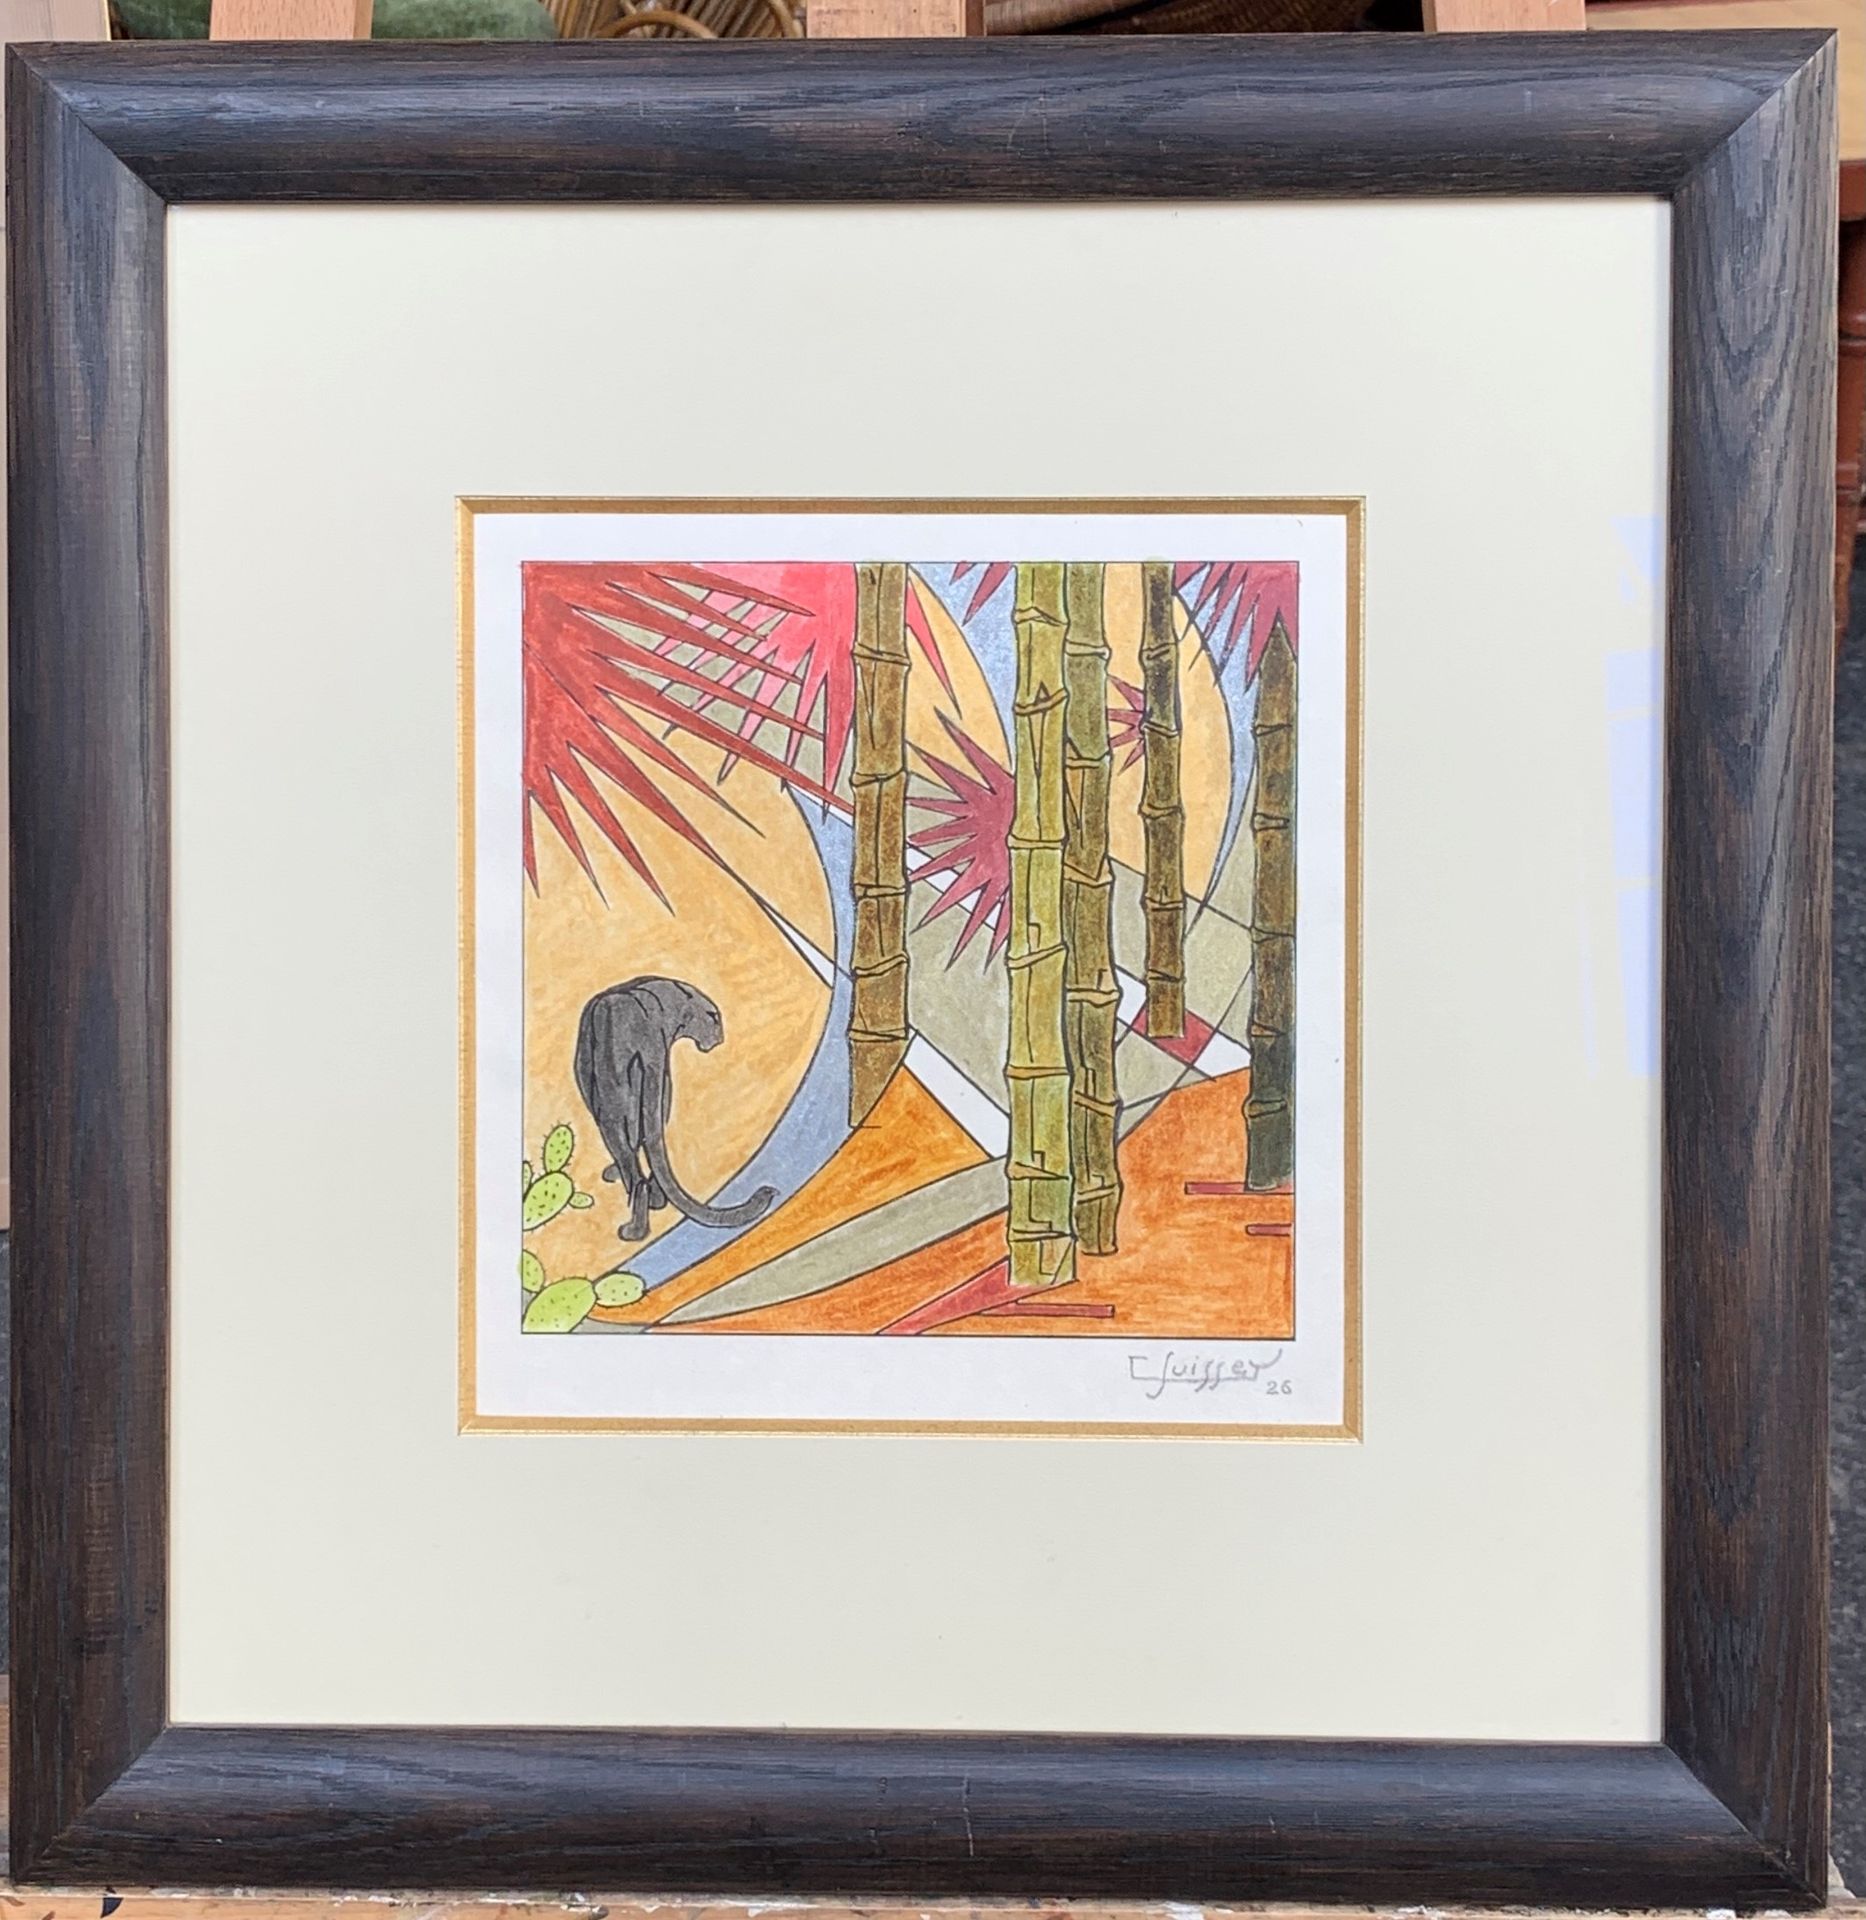 GASTON SUISSE (1896-1988) Schwarzer Panther, 1926

Holzschnitt, auf perlmuttfarb&hellip;